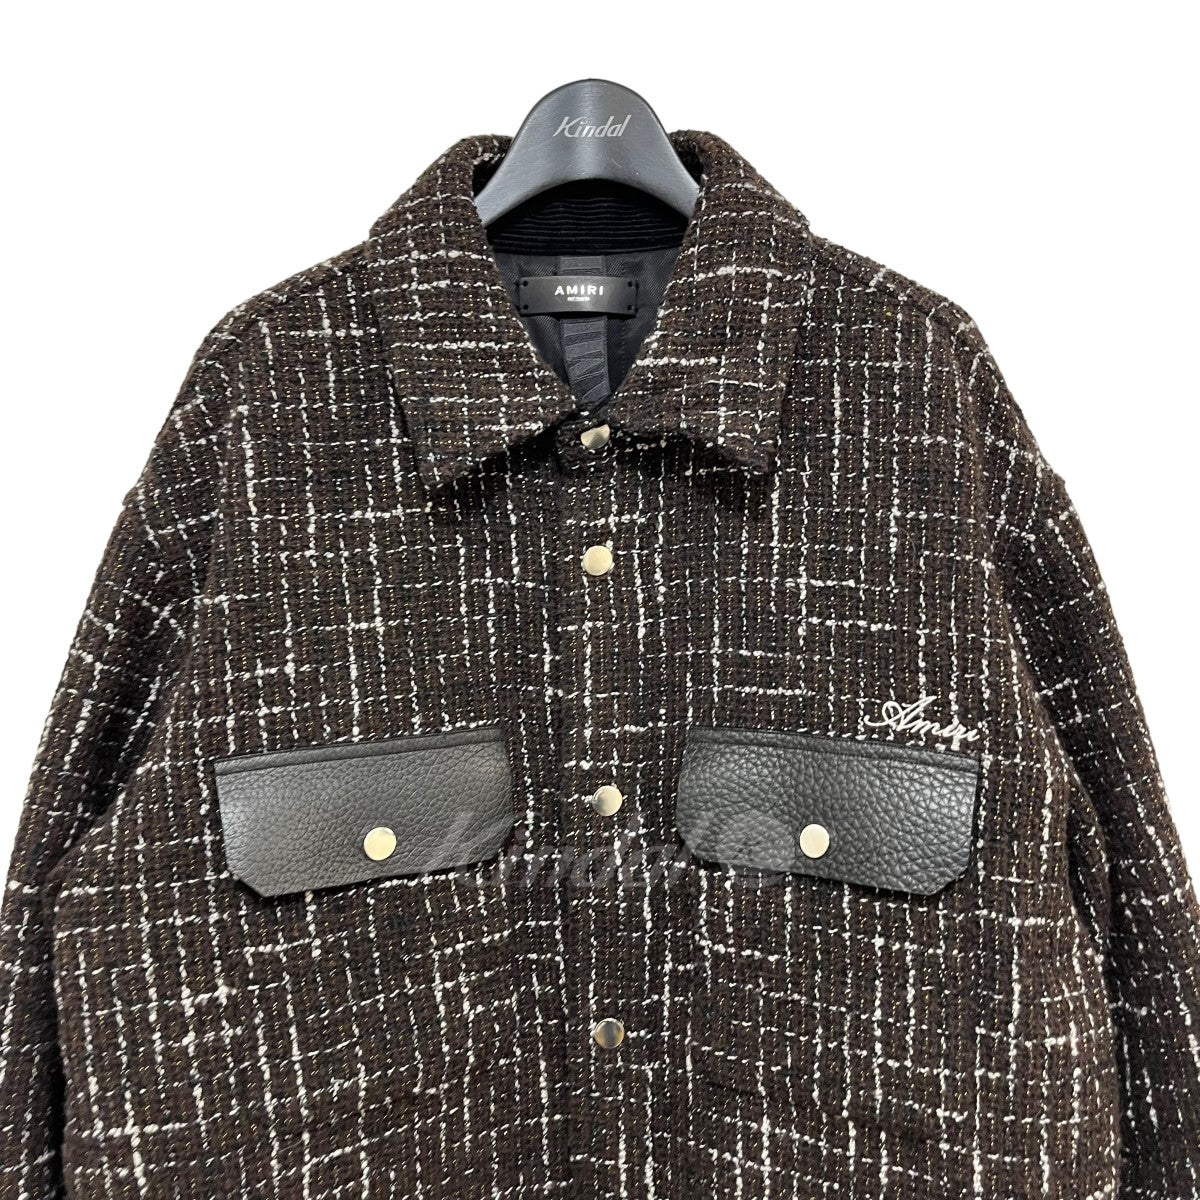 AMIRI (アミリ) 22AW ツイードパデッドオーバーシャツジャケット素材ウールポリエステル